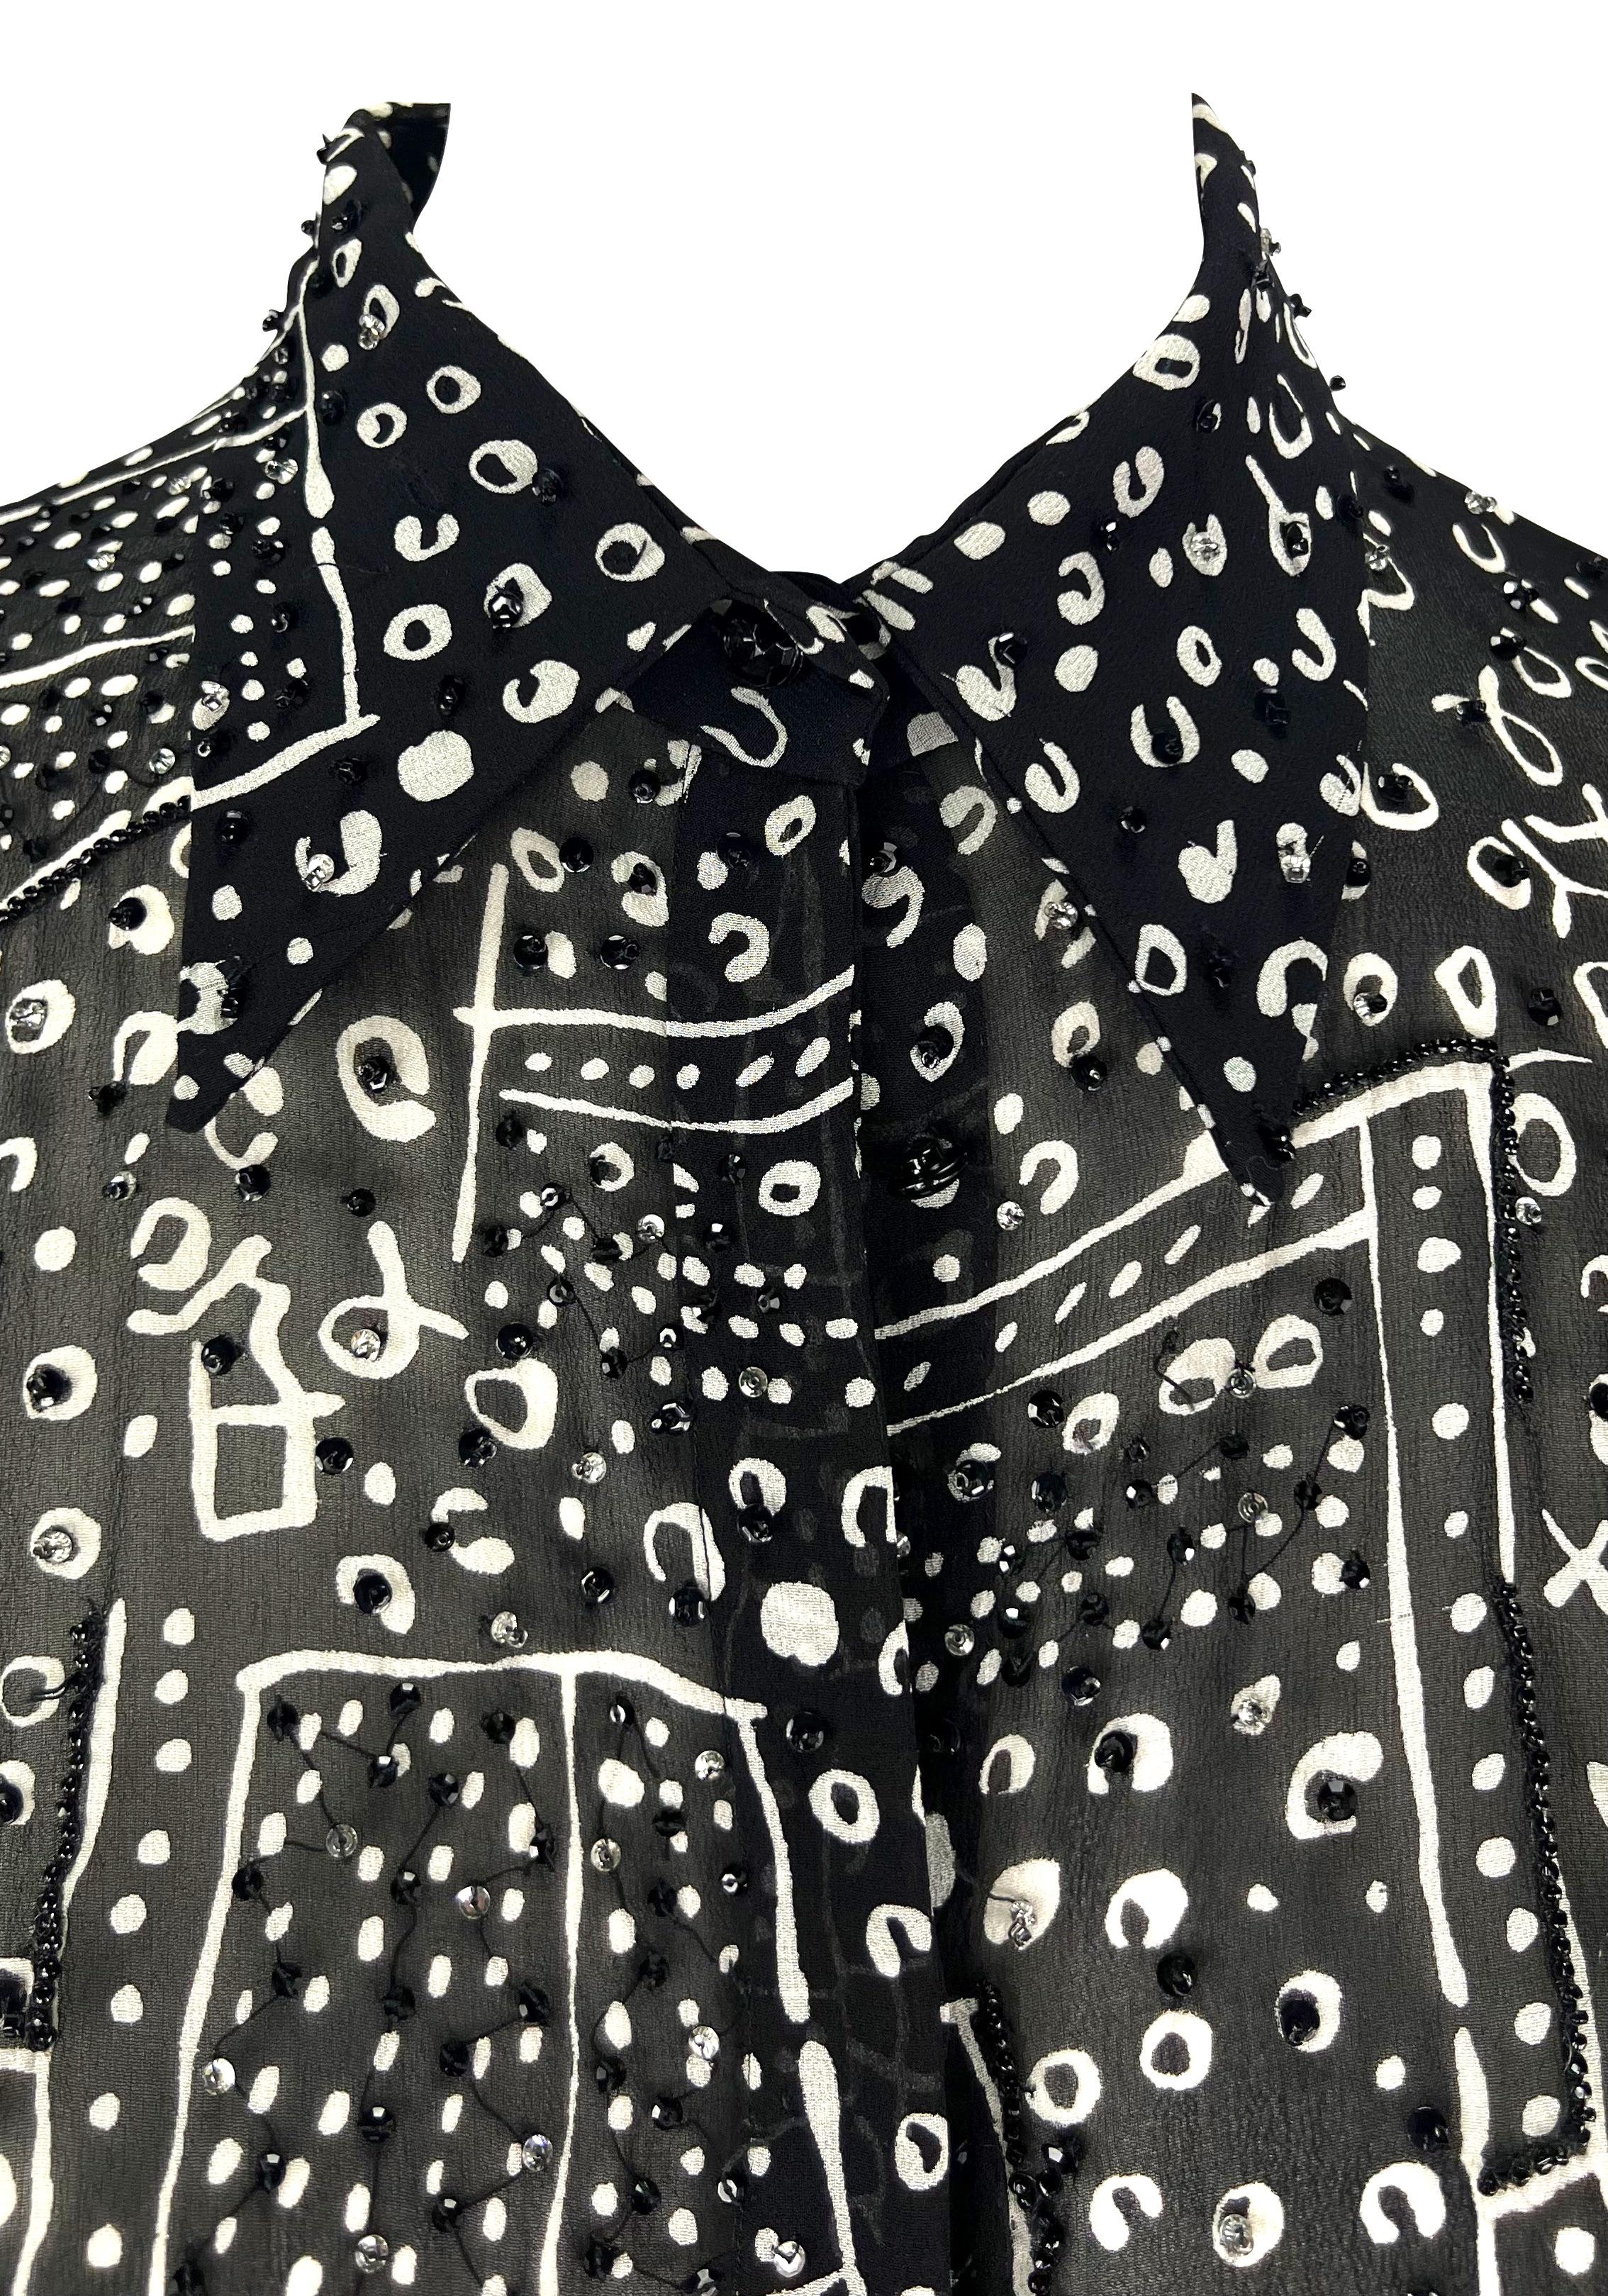 Ich präsentiere ein schickes, abstraktes, schwarz-weißes Atelier Versace Top, entworfen von Donatella Versace. Dieses schicke schwarze Oberteil aus den 1990er Jahren hat ein abstraktes weißes Muster, das mit handgearbeiteten Perlen akzentuiert ist.